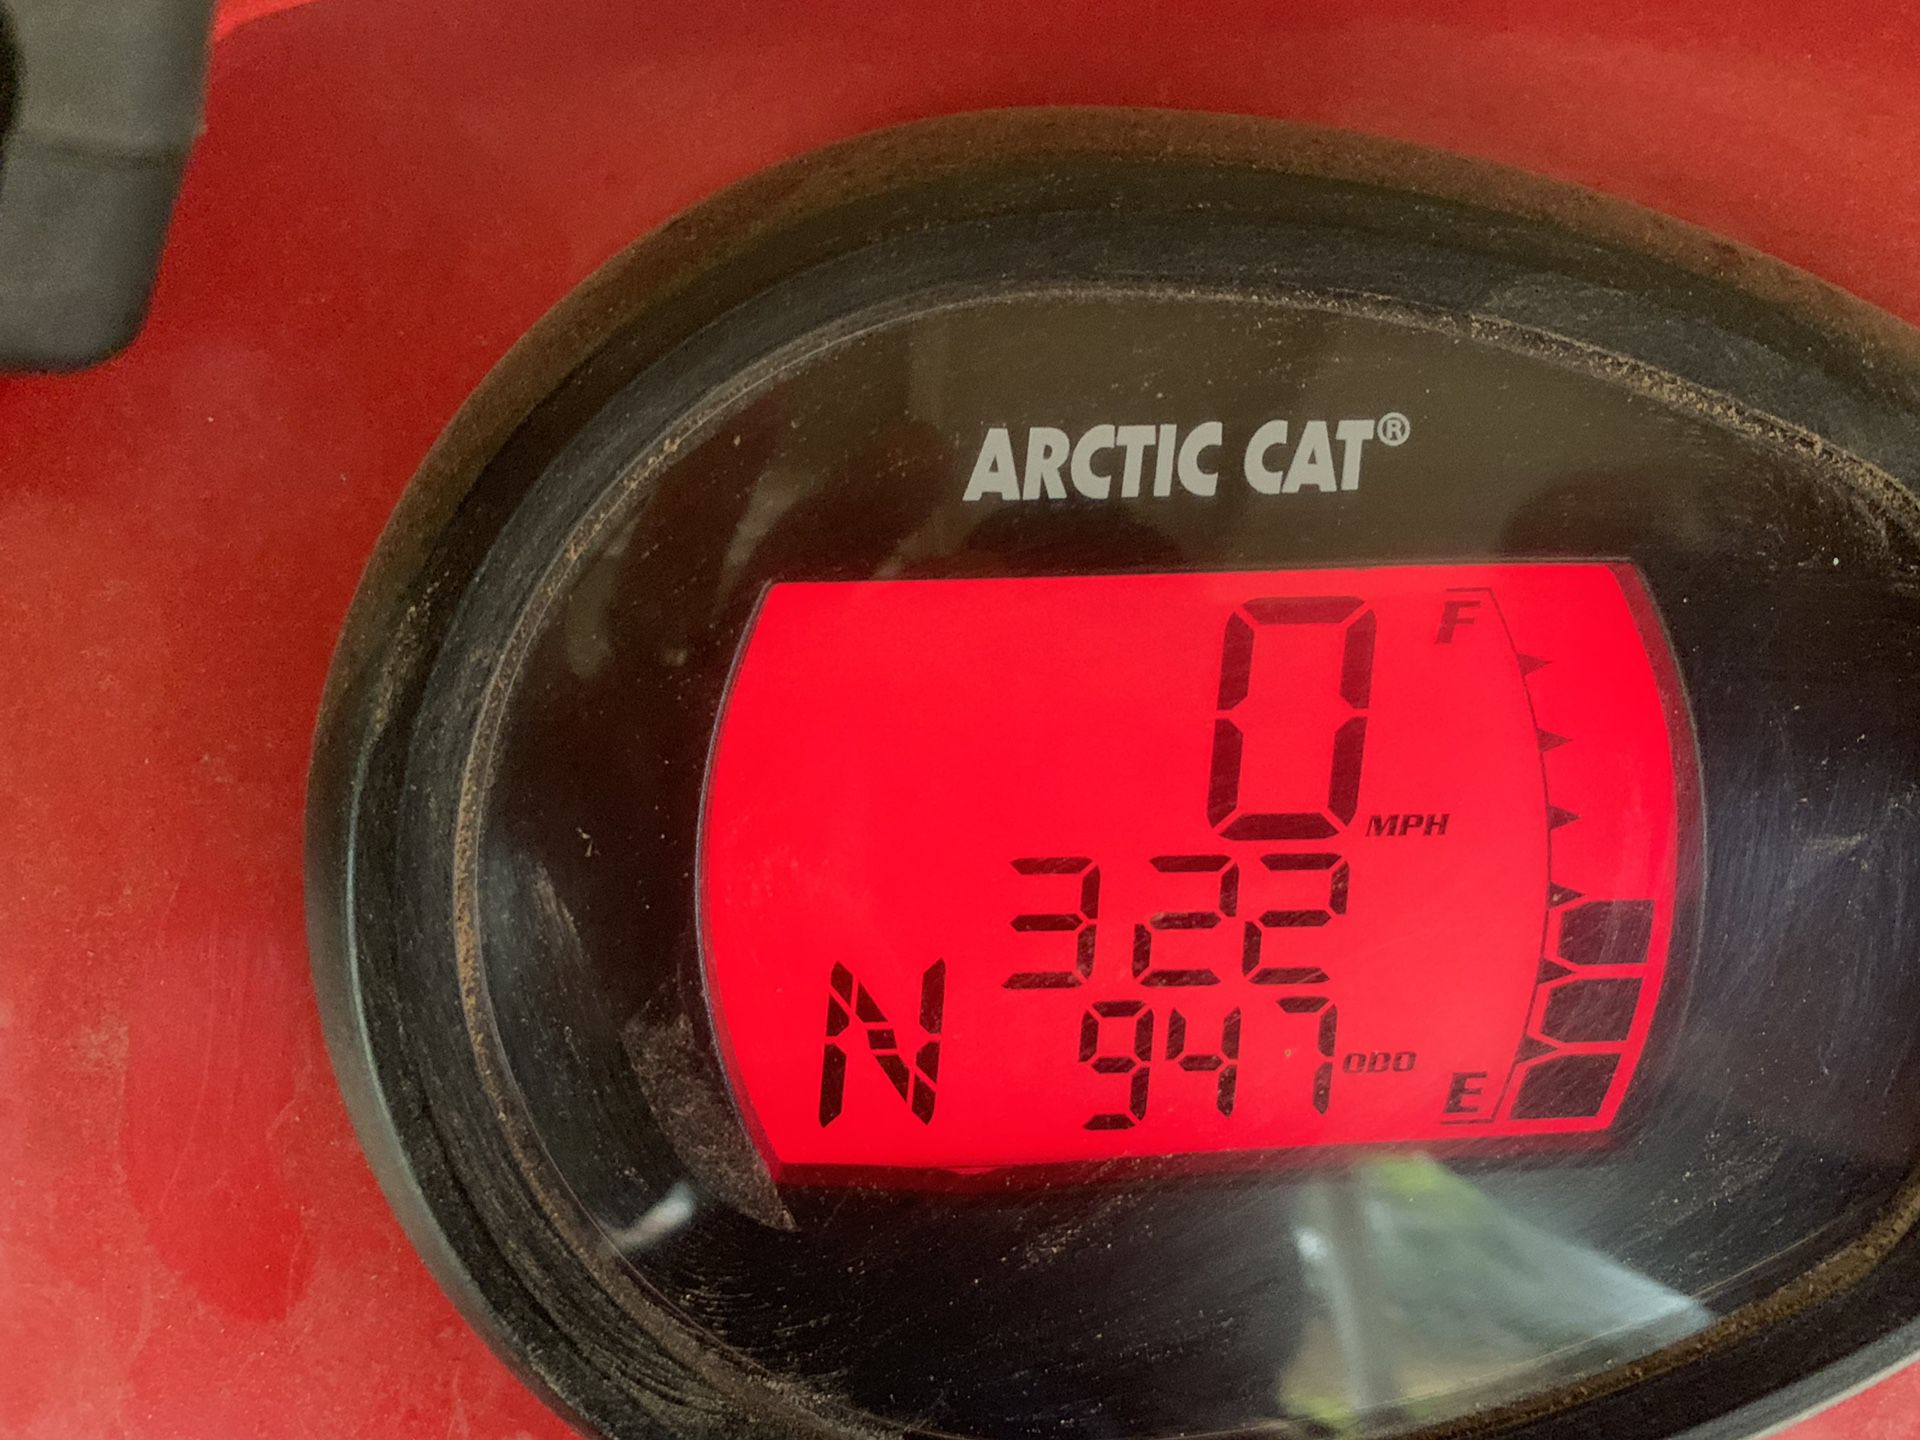 Artic cat quad 4x4 400cc